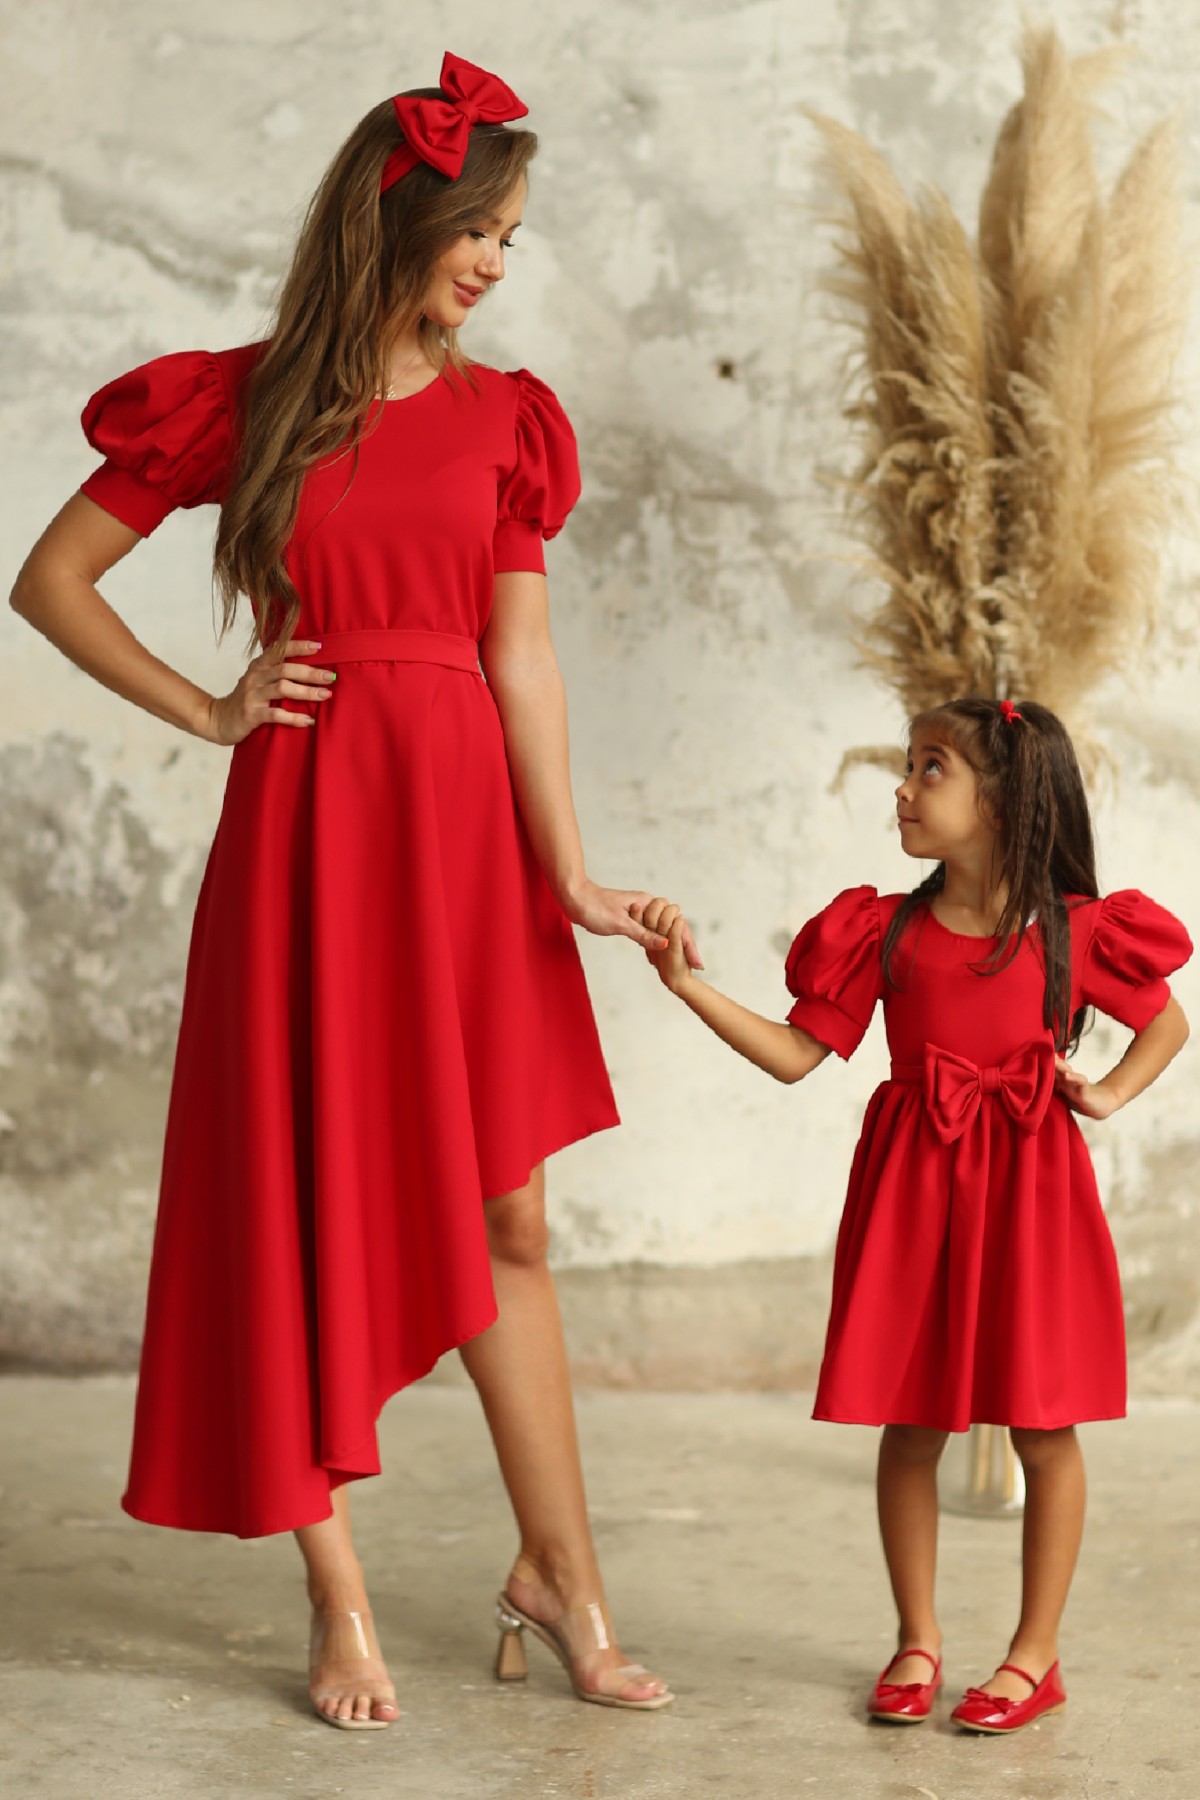 KÜÇÜĞÜM BUTİK Kırmızı Asimetrik Kesim Karpuz Kol Anne Kız Tasarımı (Anne ve Çocuk Ayrı Ayrı Sepete Eklenmelidir)